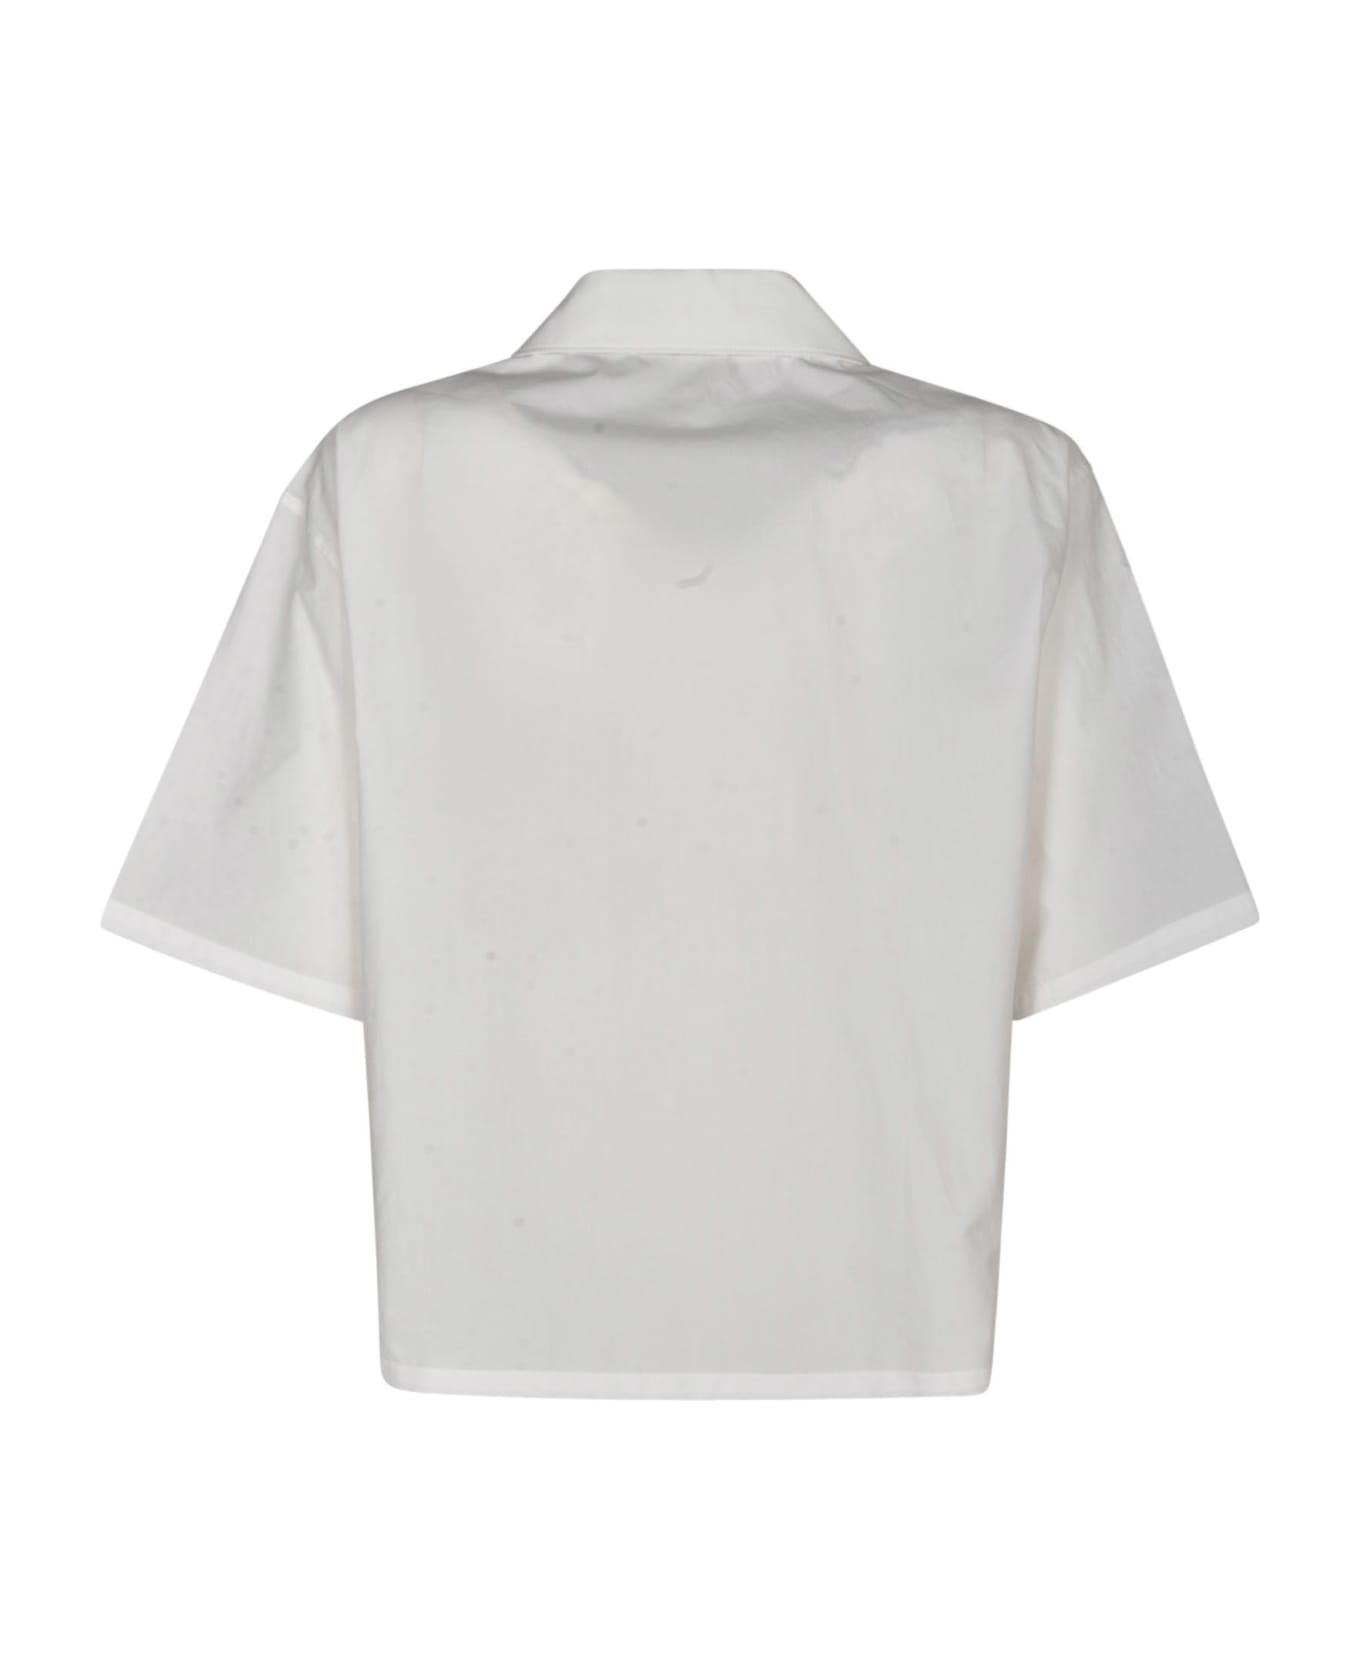 Kenzo Boke Cropped Hawaiian Shirt - White シャツ